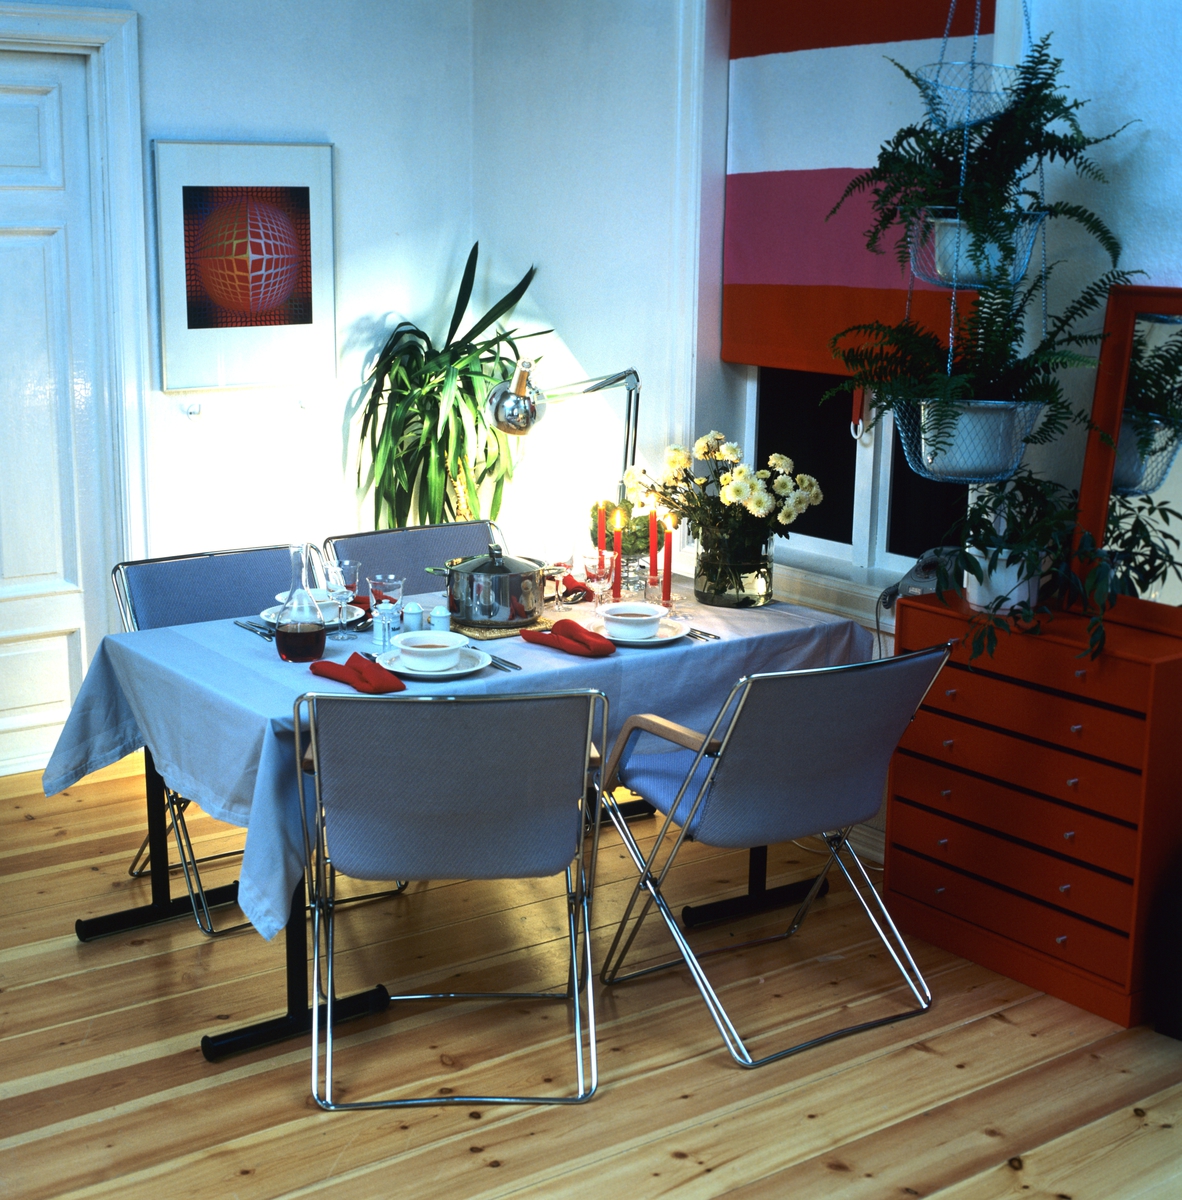 Bonytt's forslag til innredning av spiseavdeling i leilighet. Bordet brukes til daglig som arbeidsbord og snus da mot vinduet. Fotografert for Bonytt 1982.